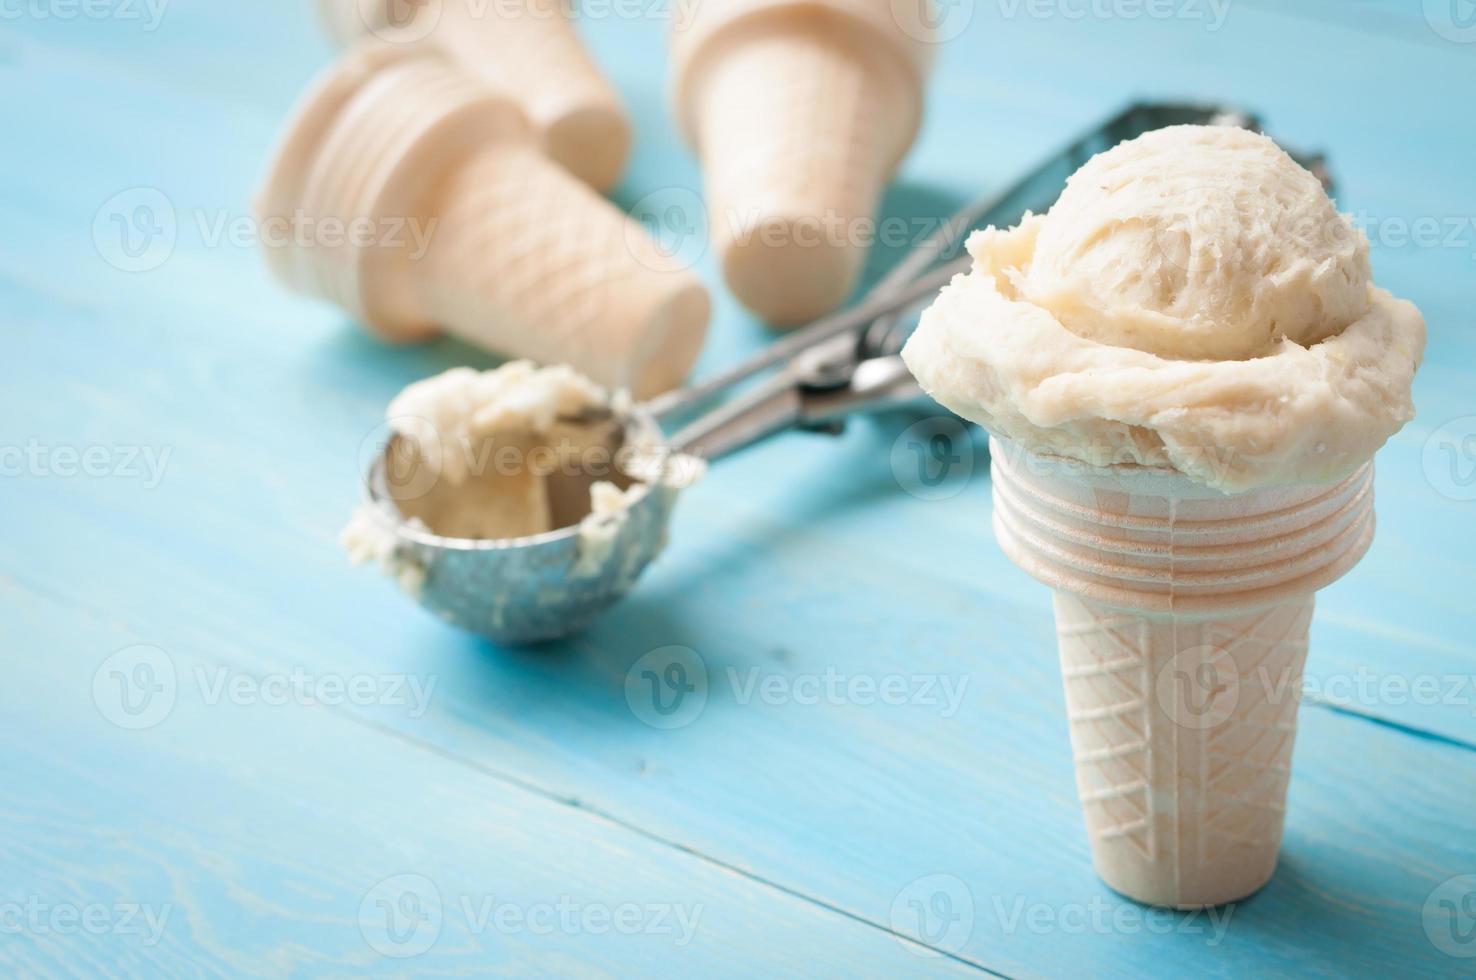 ingrédients pour la crème glacée homemad photo